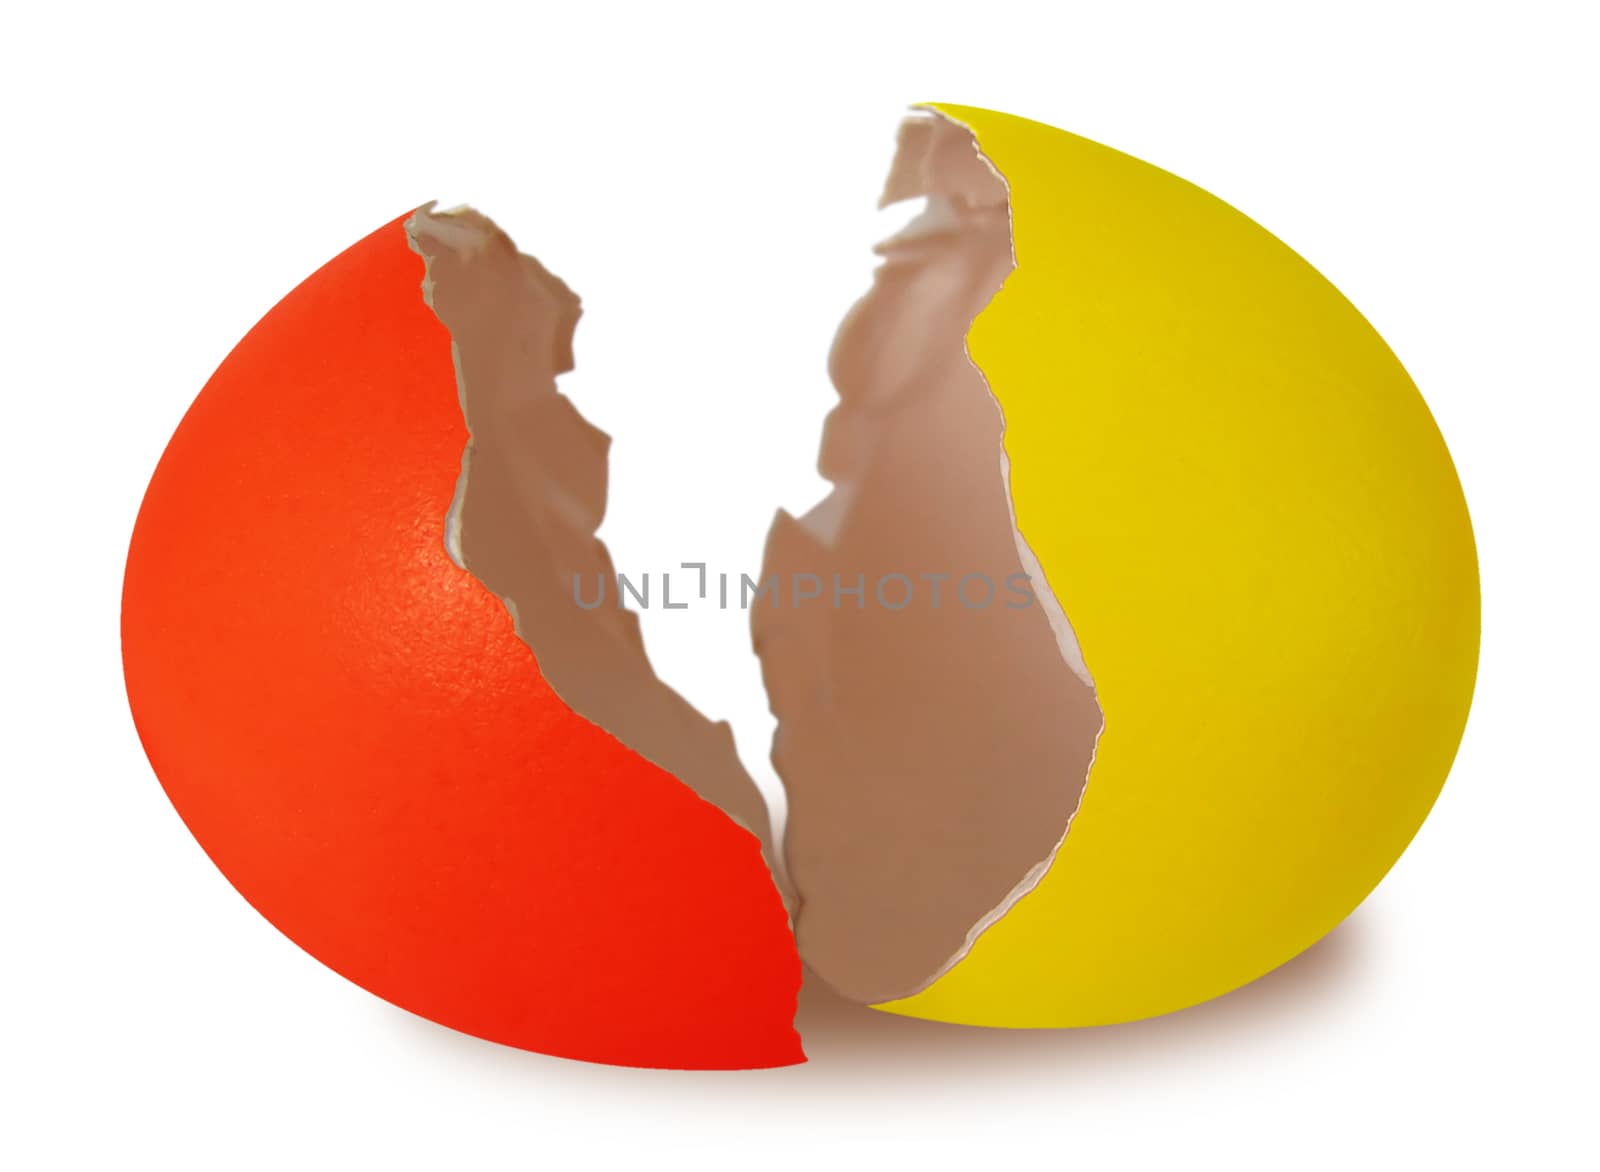 Easter broken egg shell isolated on white background